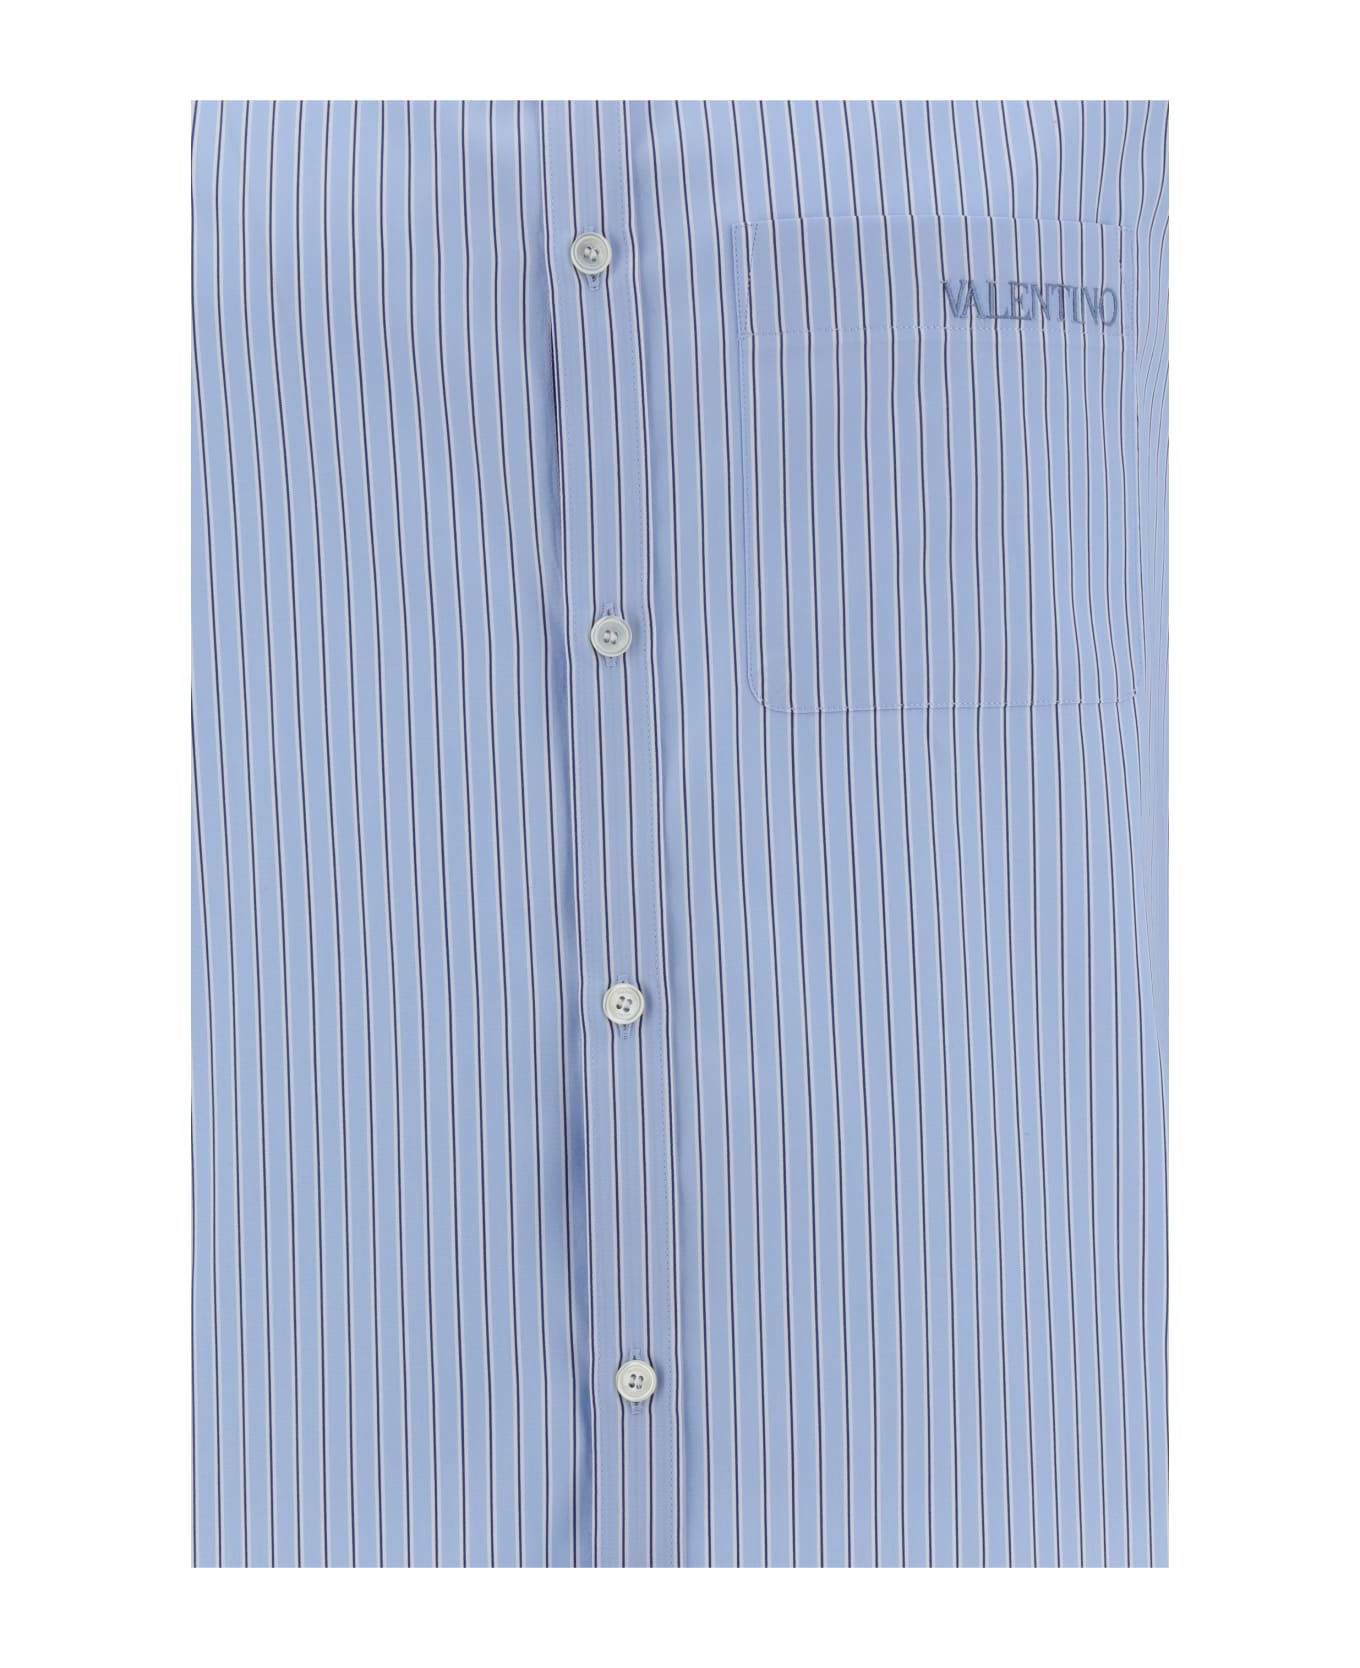 Valentino Garavani Long Sleeved Stripe Shirt - Riga Azzurro E Bianco